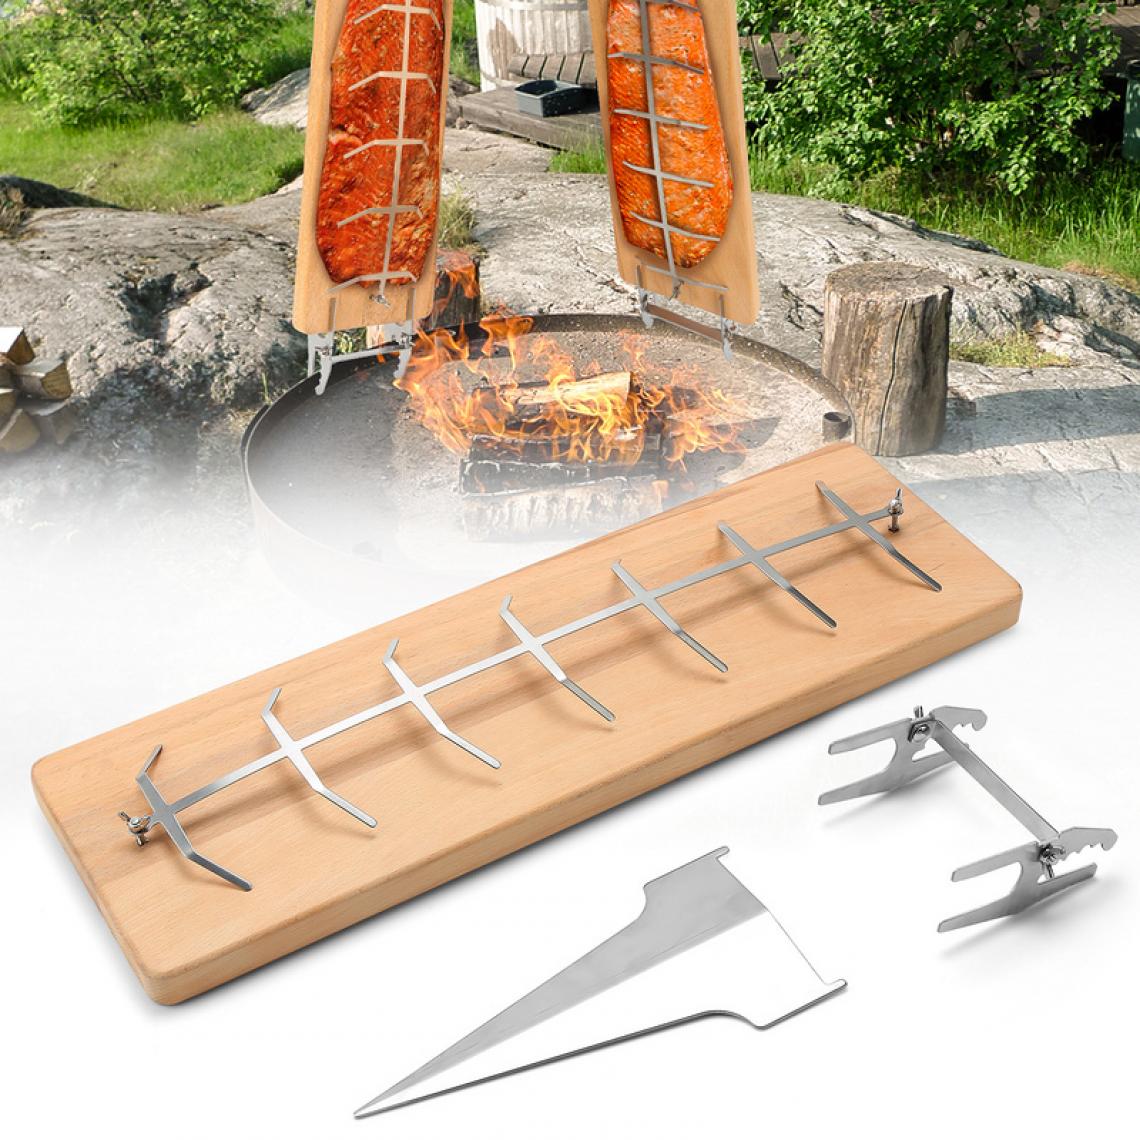 Einfeben - Grande planche à saumon à flamber Réglable avec support stable en acier inoxydable Grande planche à saumon 55cm - Accessoires barbecue